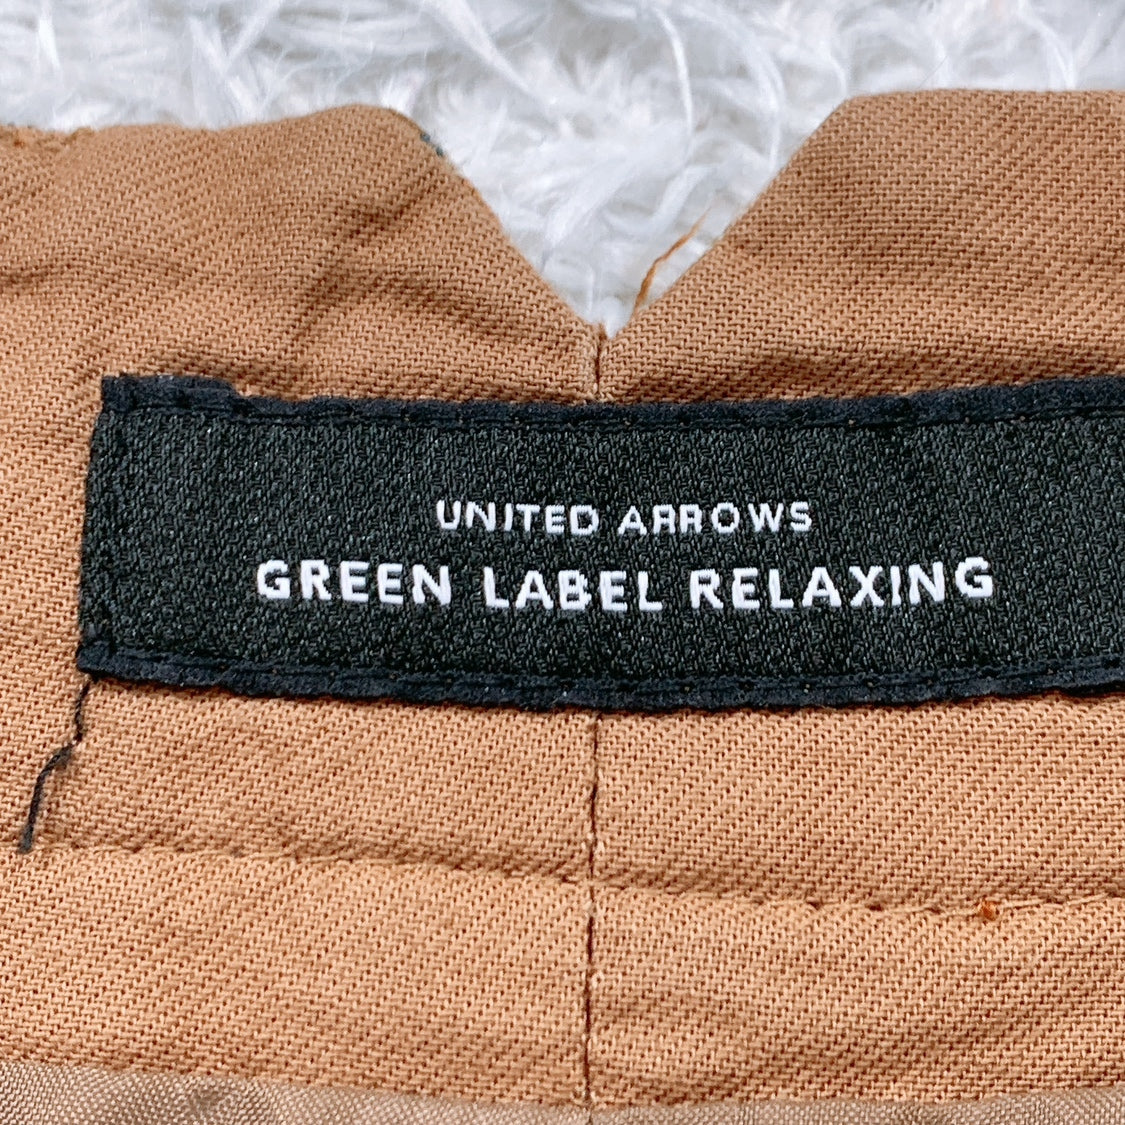 レディースL 40 green label relaxing パンツ 茶 ブラウン チェック柄 ポリエステル100 グリーンレーベル リラクシング 【14740】